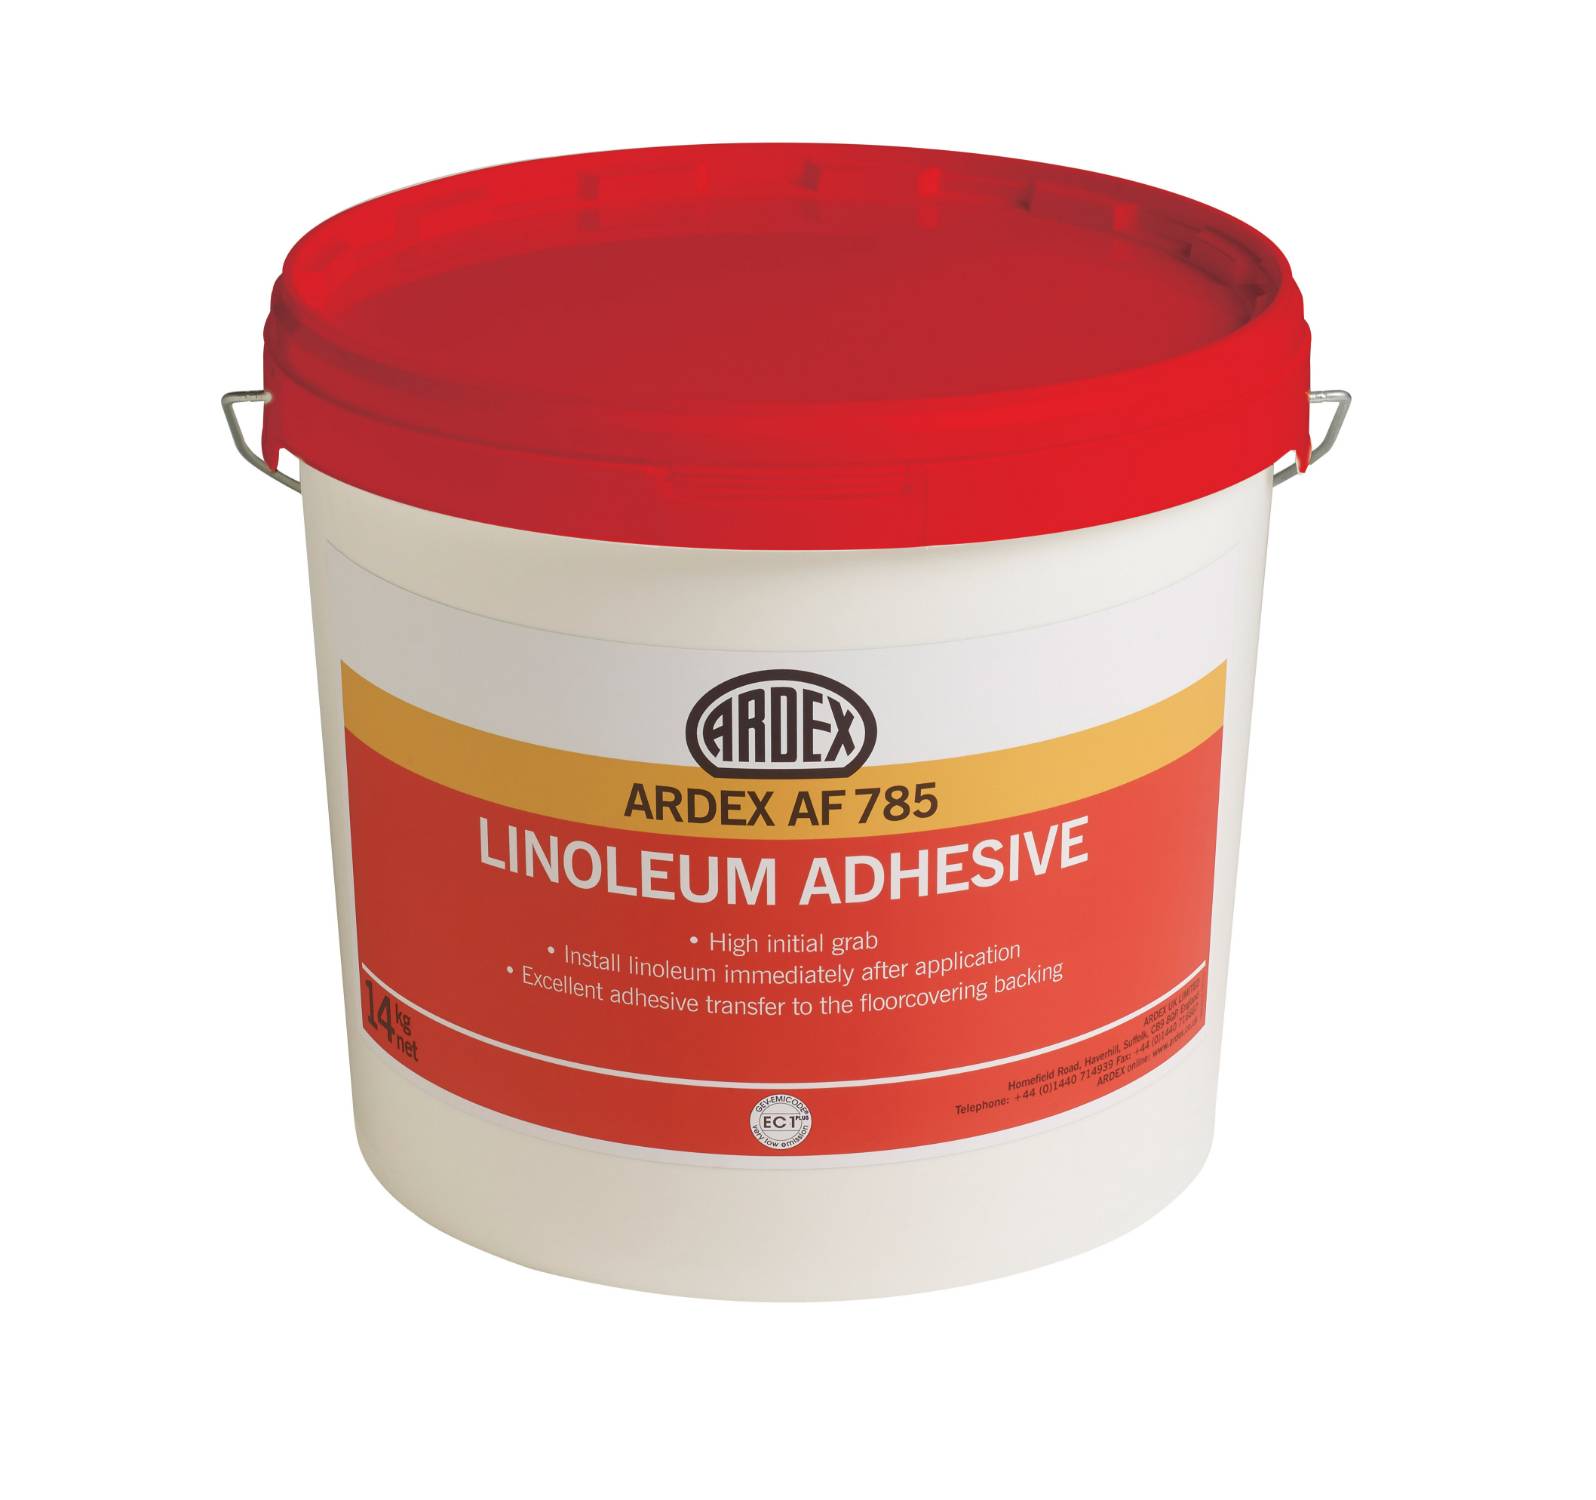 ARDEX AF 785 Linoleum Adhesive